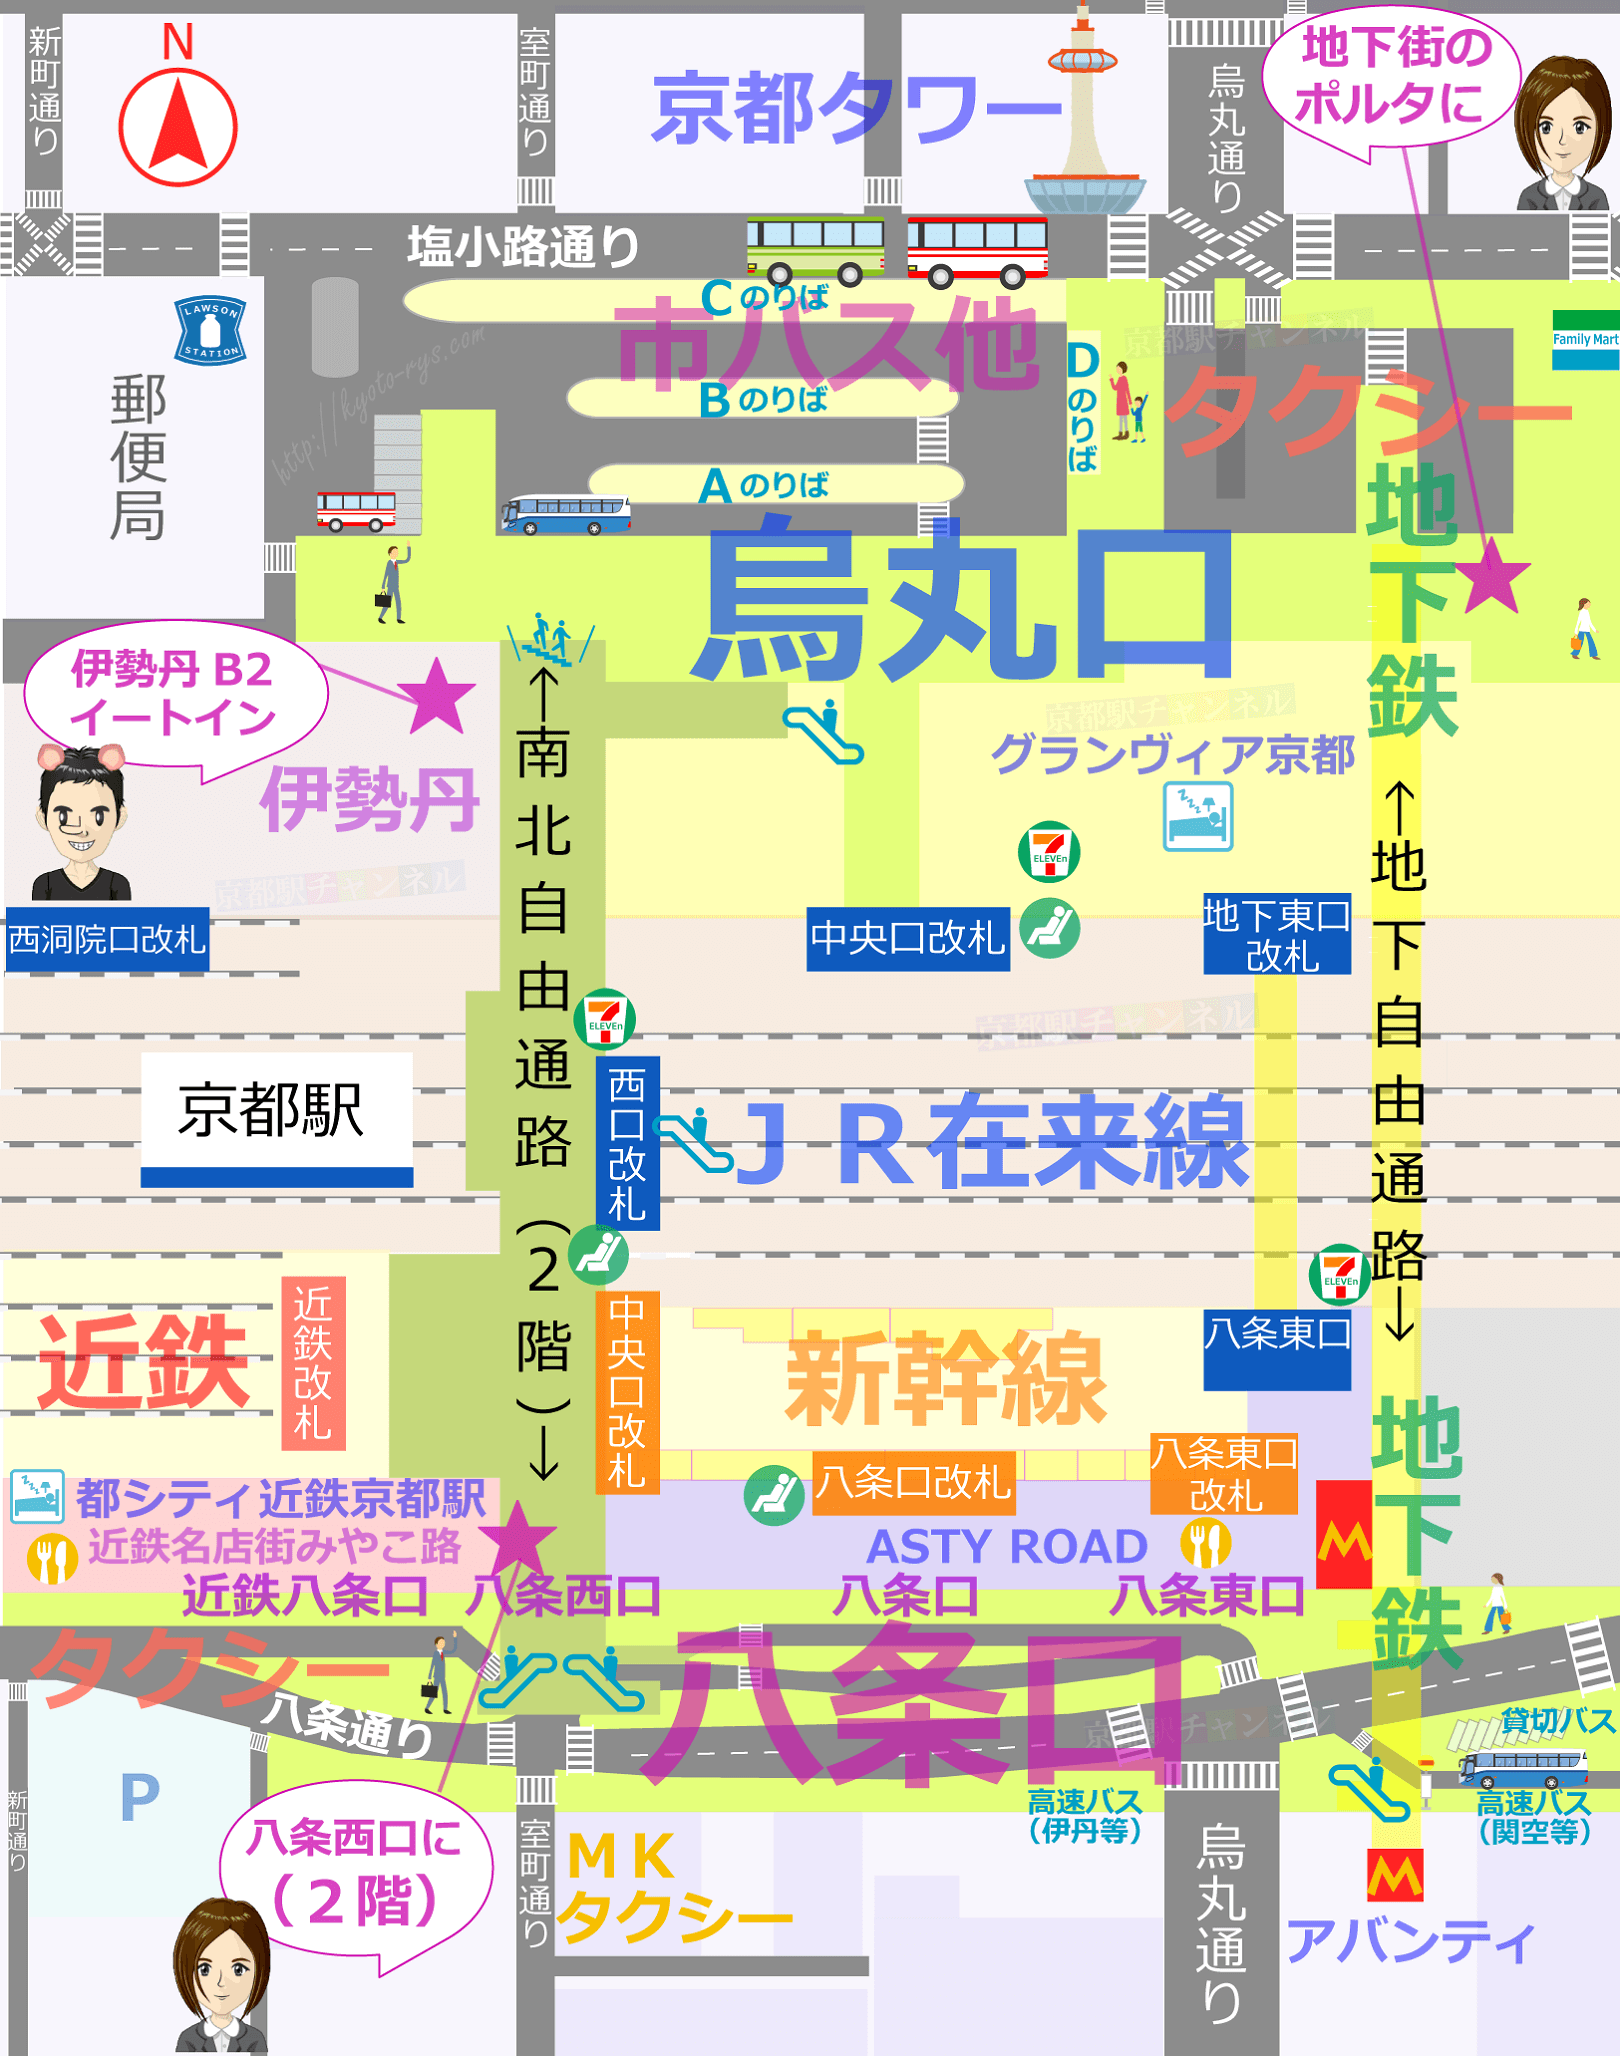 551蓬莱のJR京都駅店の地図